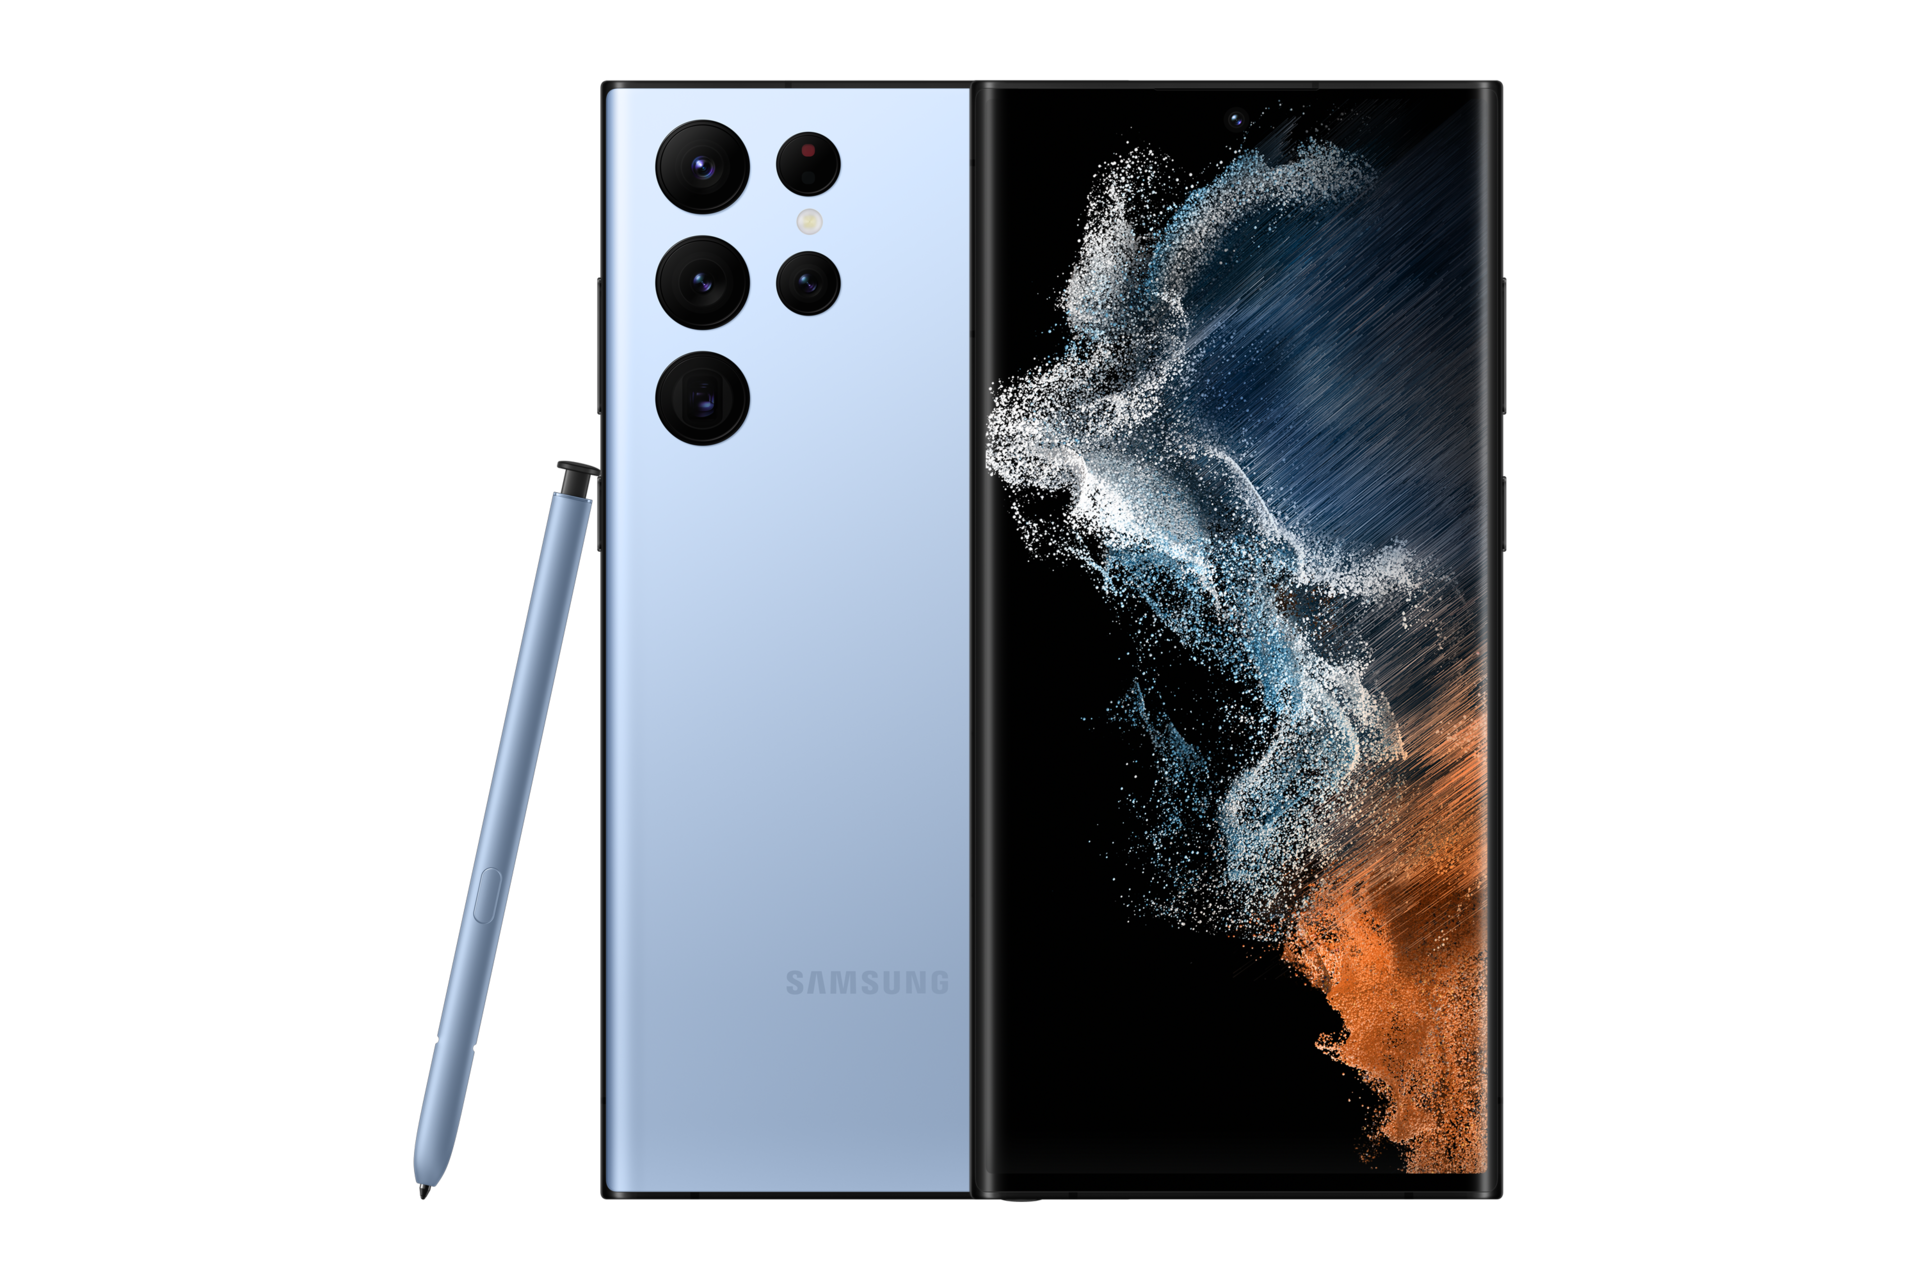 Mặt trước & sau của điện thoại Samsung S22 Ultra Xanh Lam (BlueSky) 5G 256GB phiên bản Online Exclusive với bút S Pen cải tiến